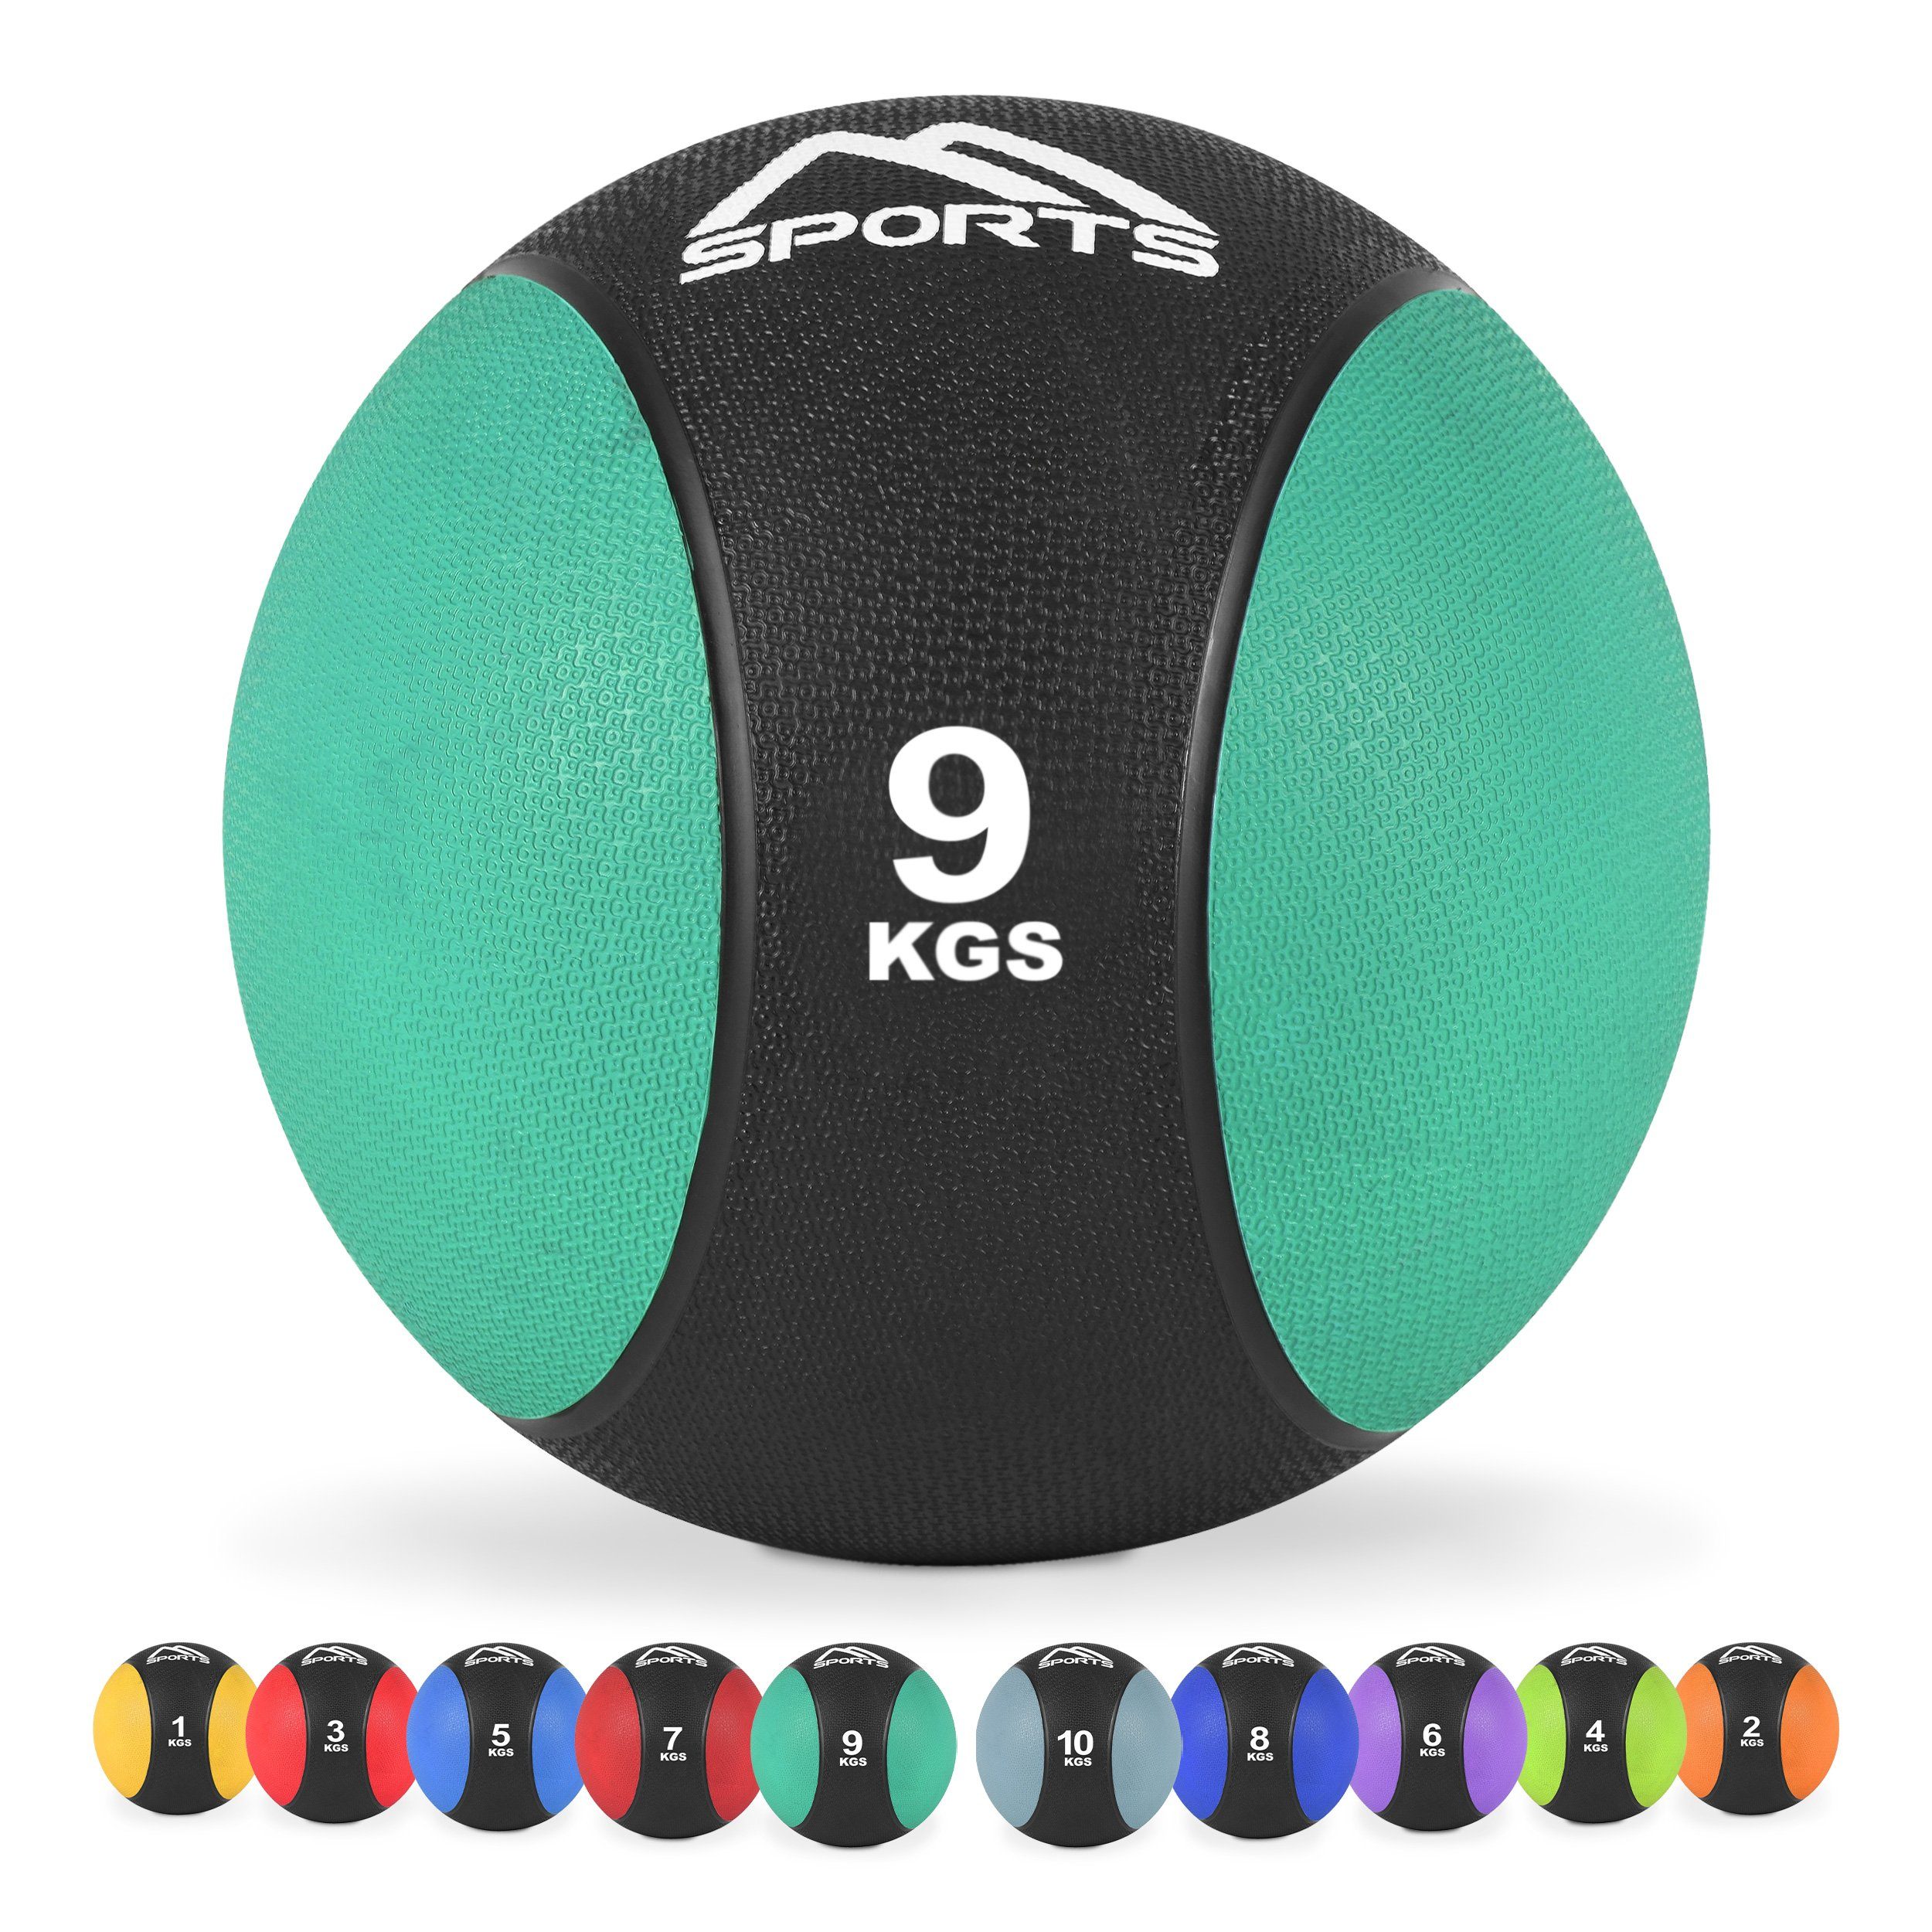 MSports® Medizinball Medizinball 1 – 10 kg – inkl. Übungsposter 9 kg - Smaragdgrün